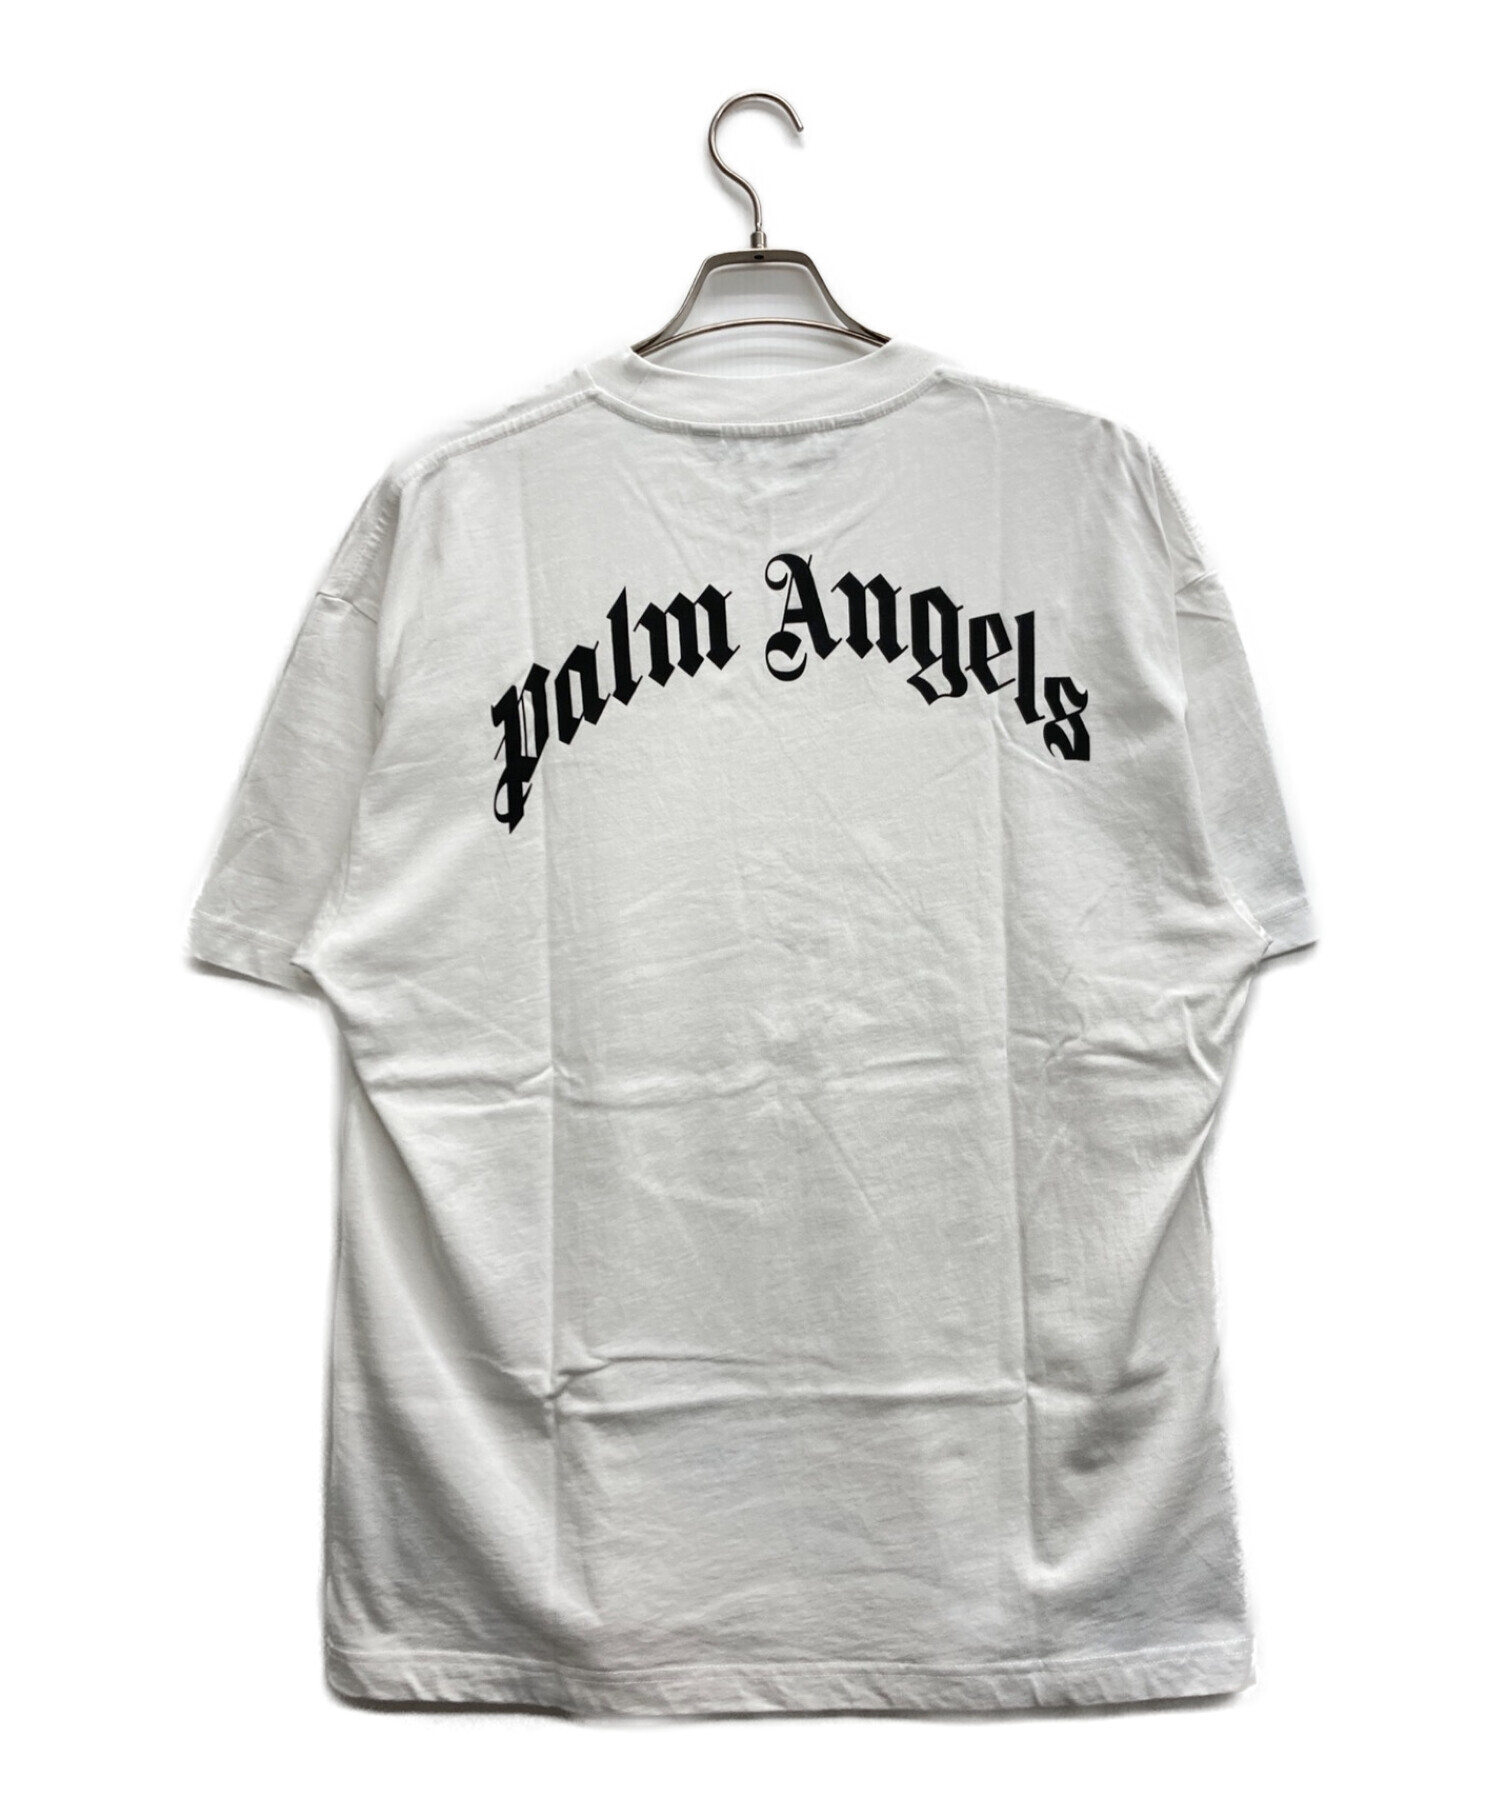 未使用・本物保証☆PALM ANGELS PALMS&SKULL Tシャツ XL